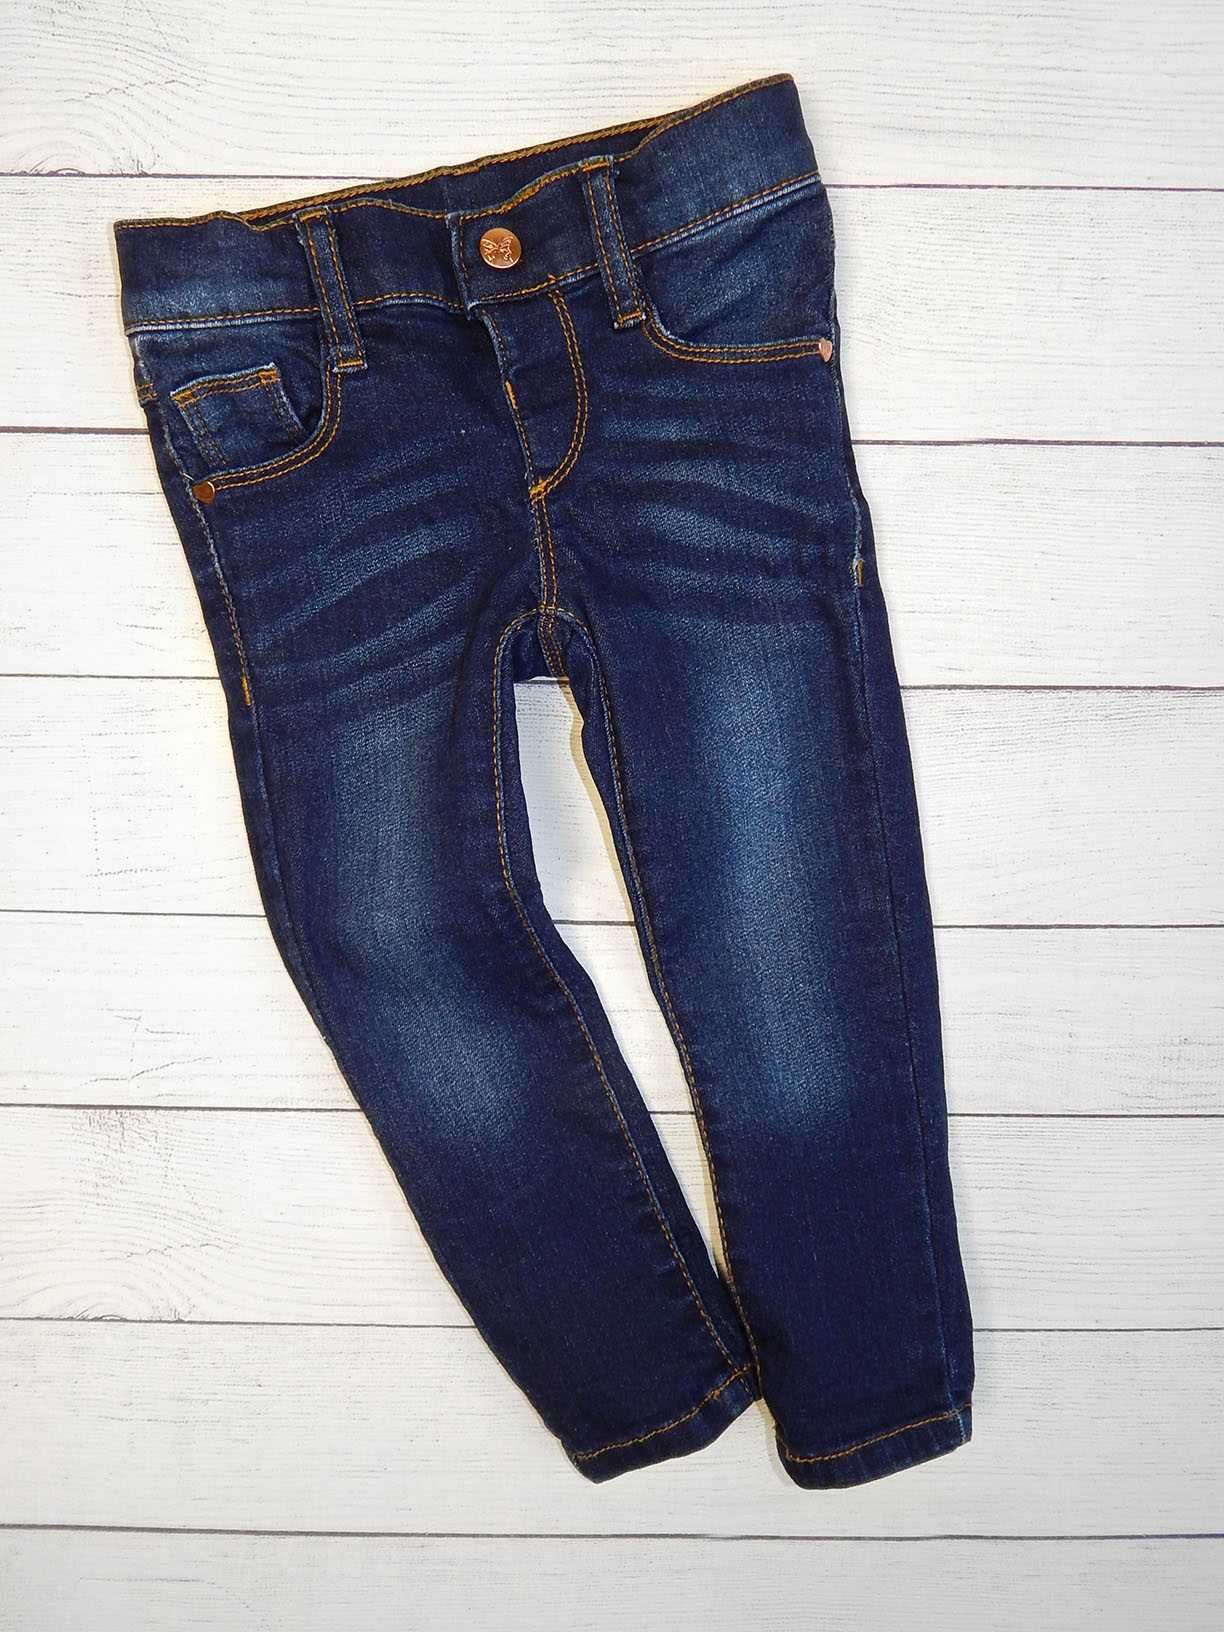 Качественные джинсы от mothercare, для девочки 2-2,5 года. 92 рост.